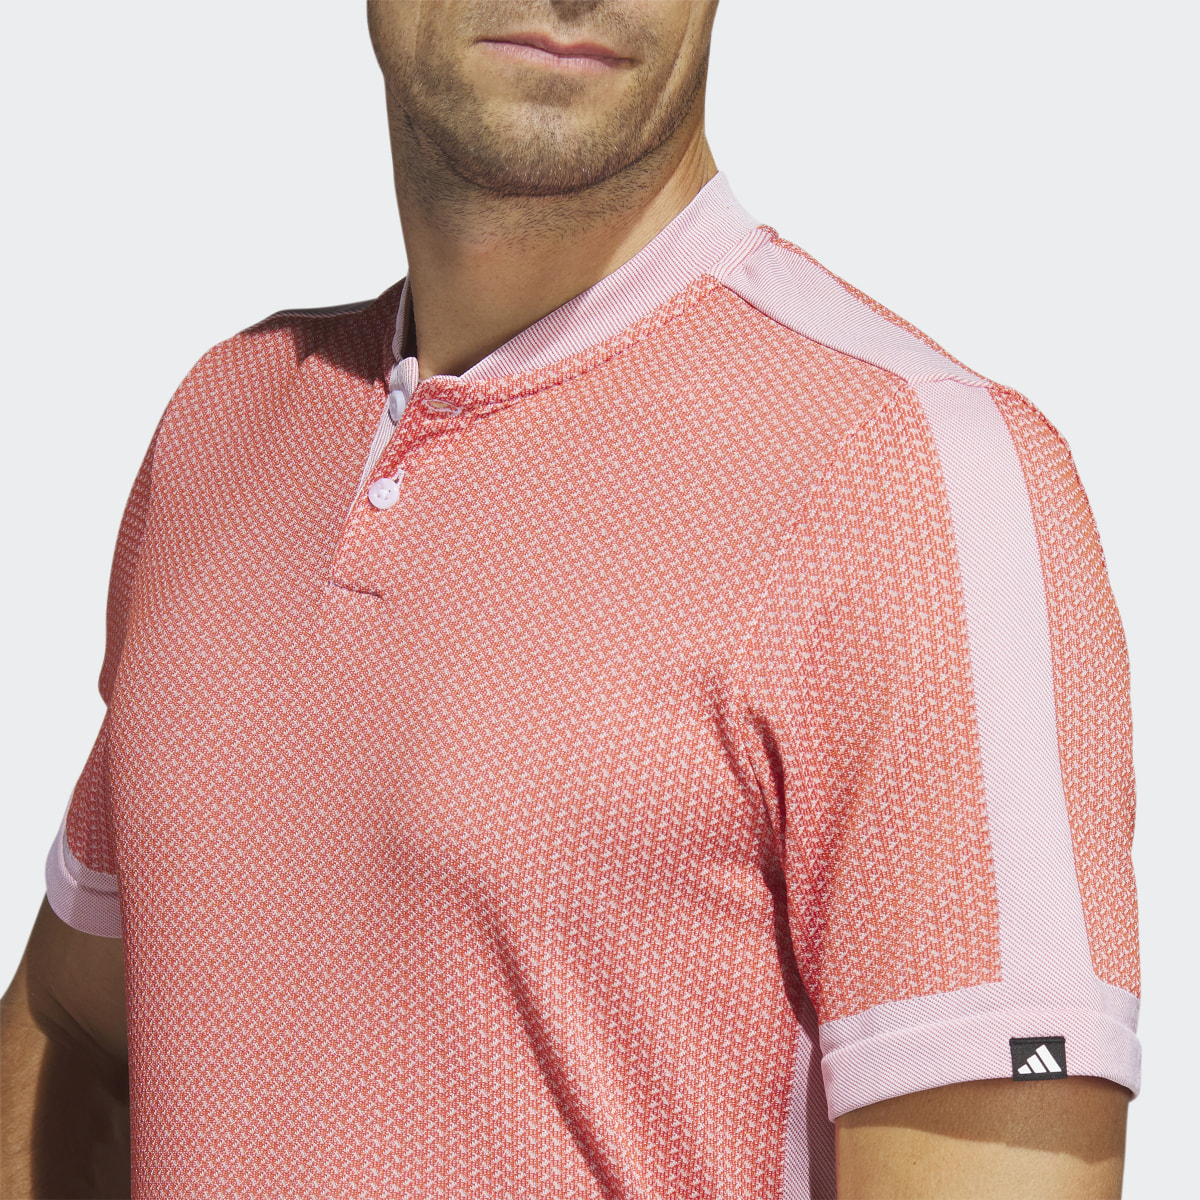 Adidas Ultimate365 Tour Textured PRIMEKNIT Golf Poloshirt. 6